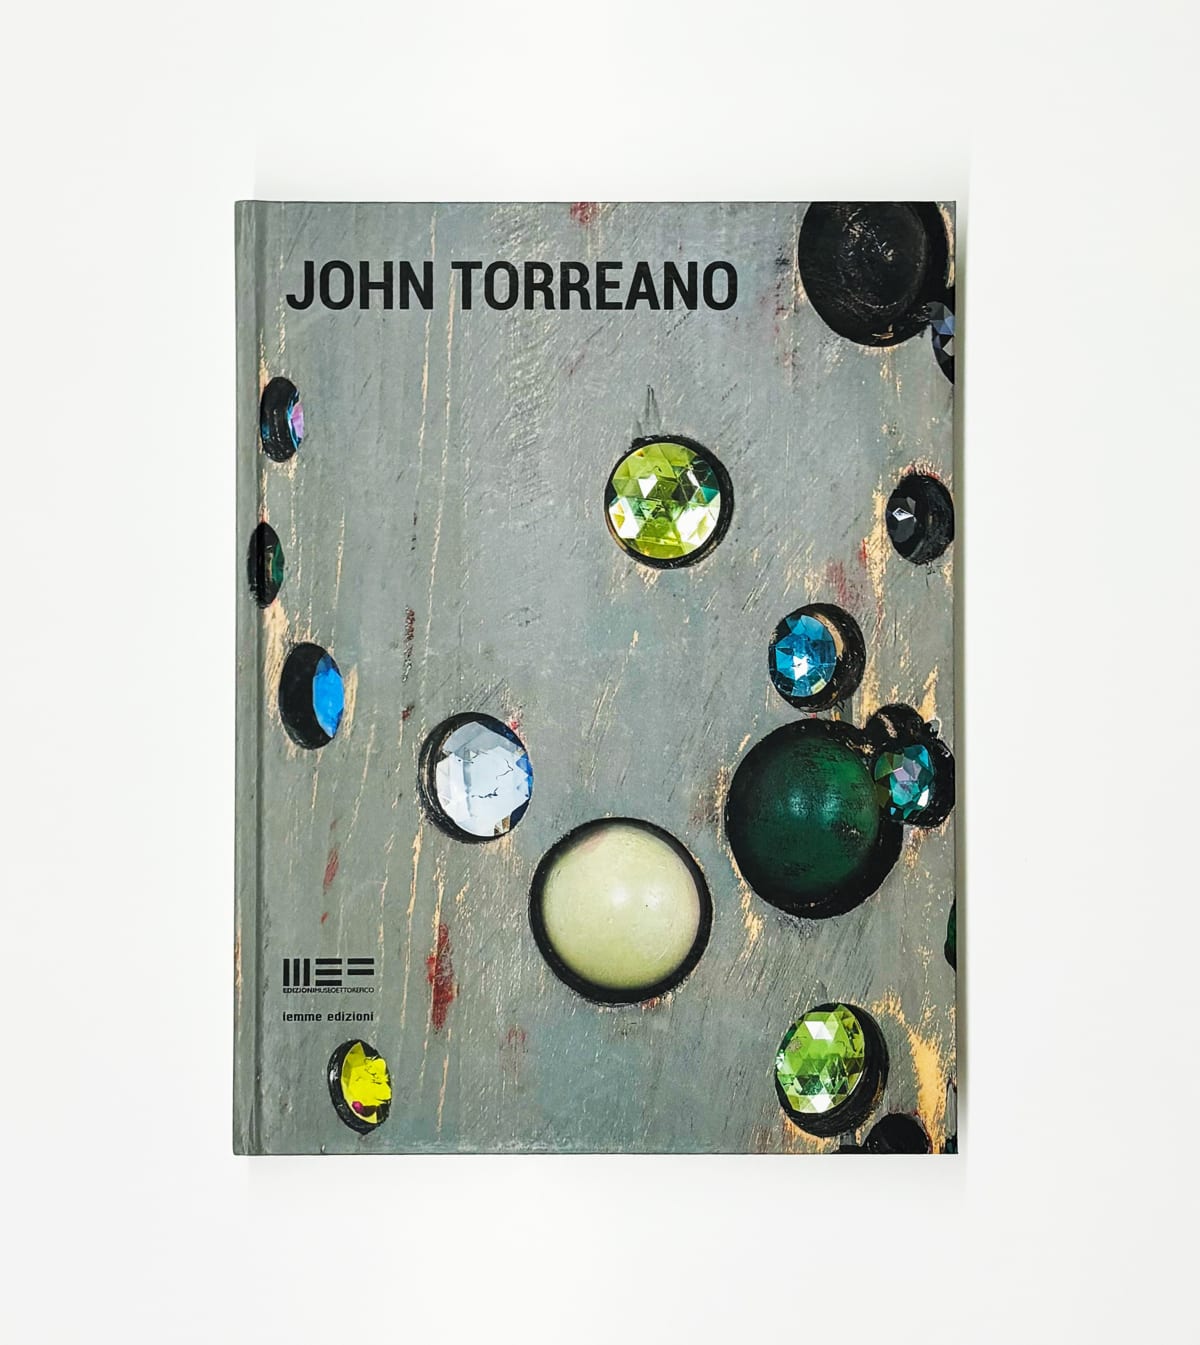 John Torreano